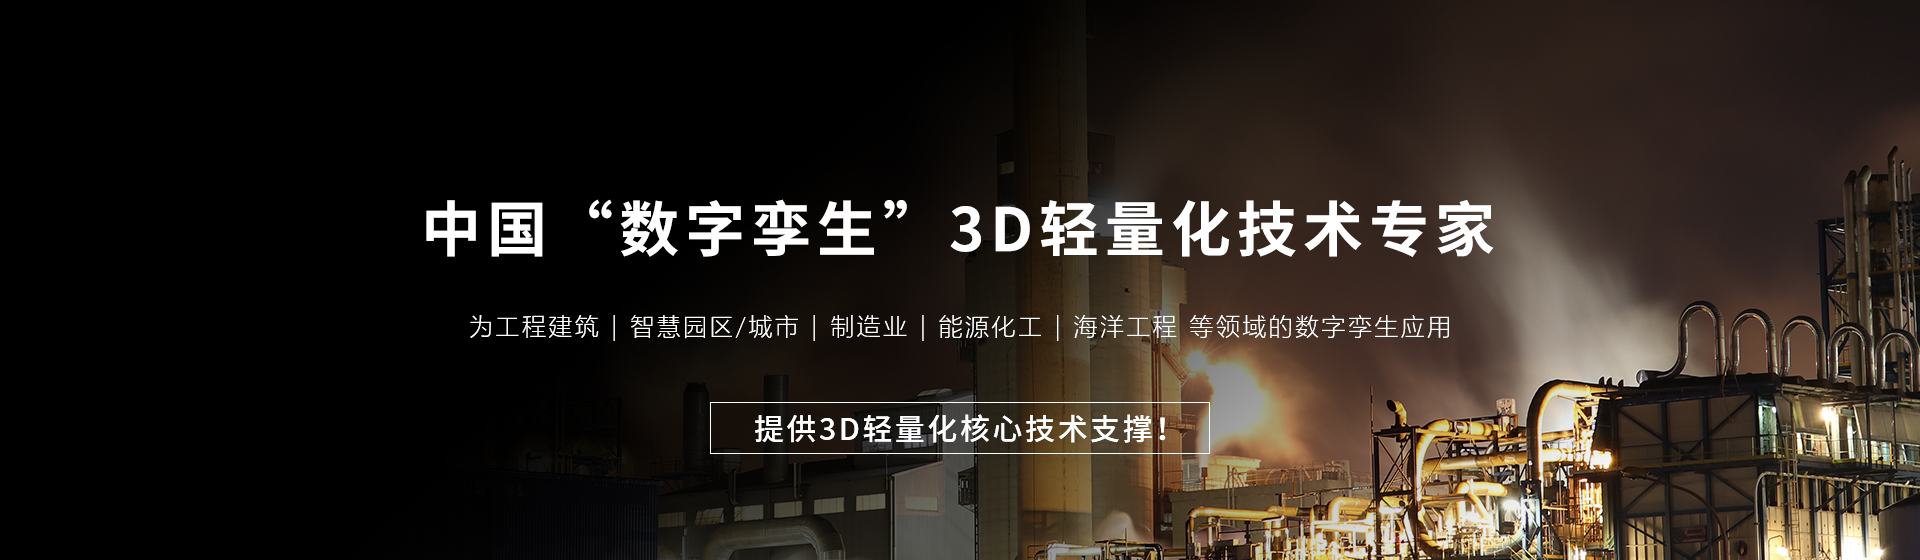 葛兰岱尔-中国“数字孪生”3D轻量化技术专家